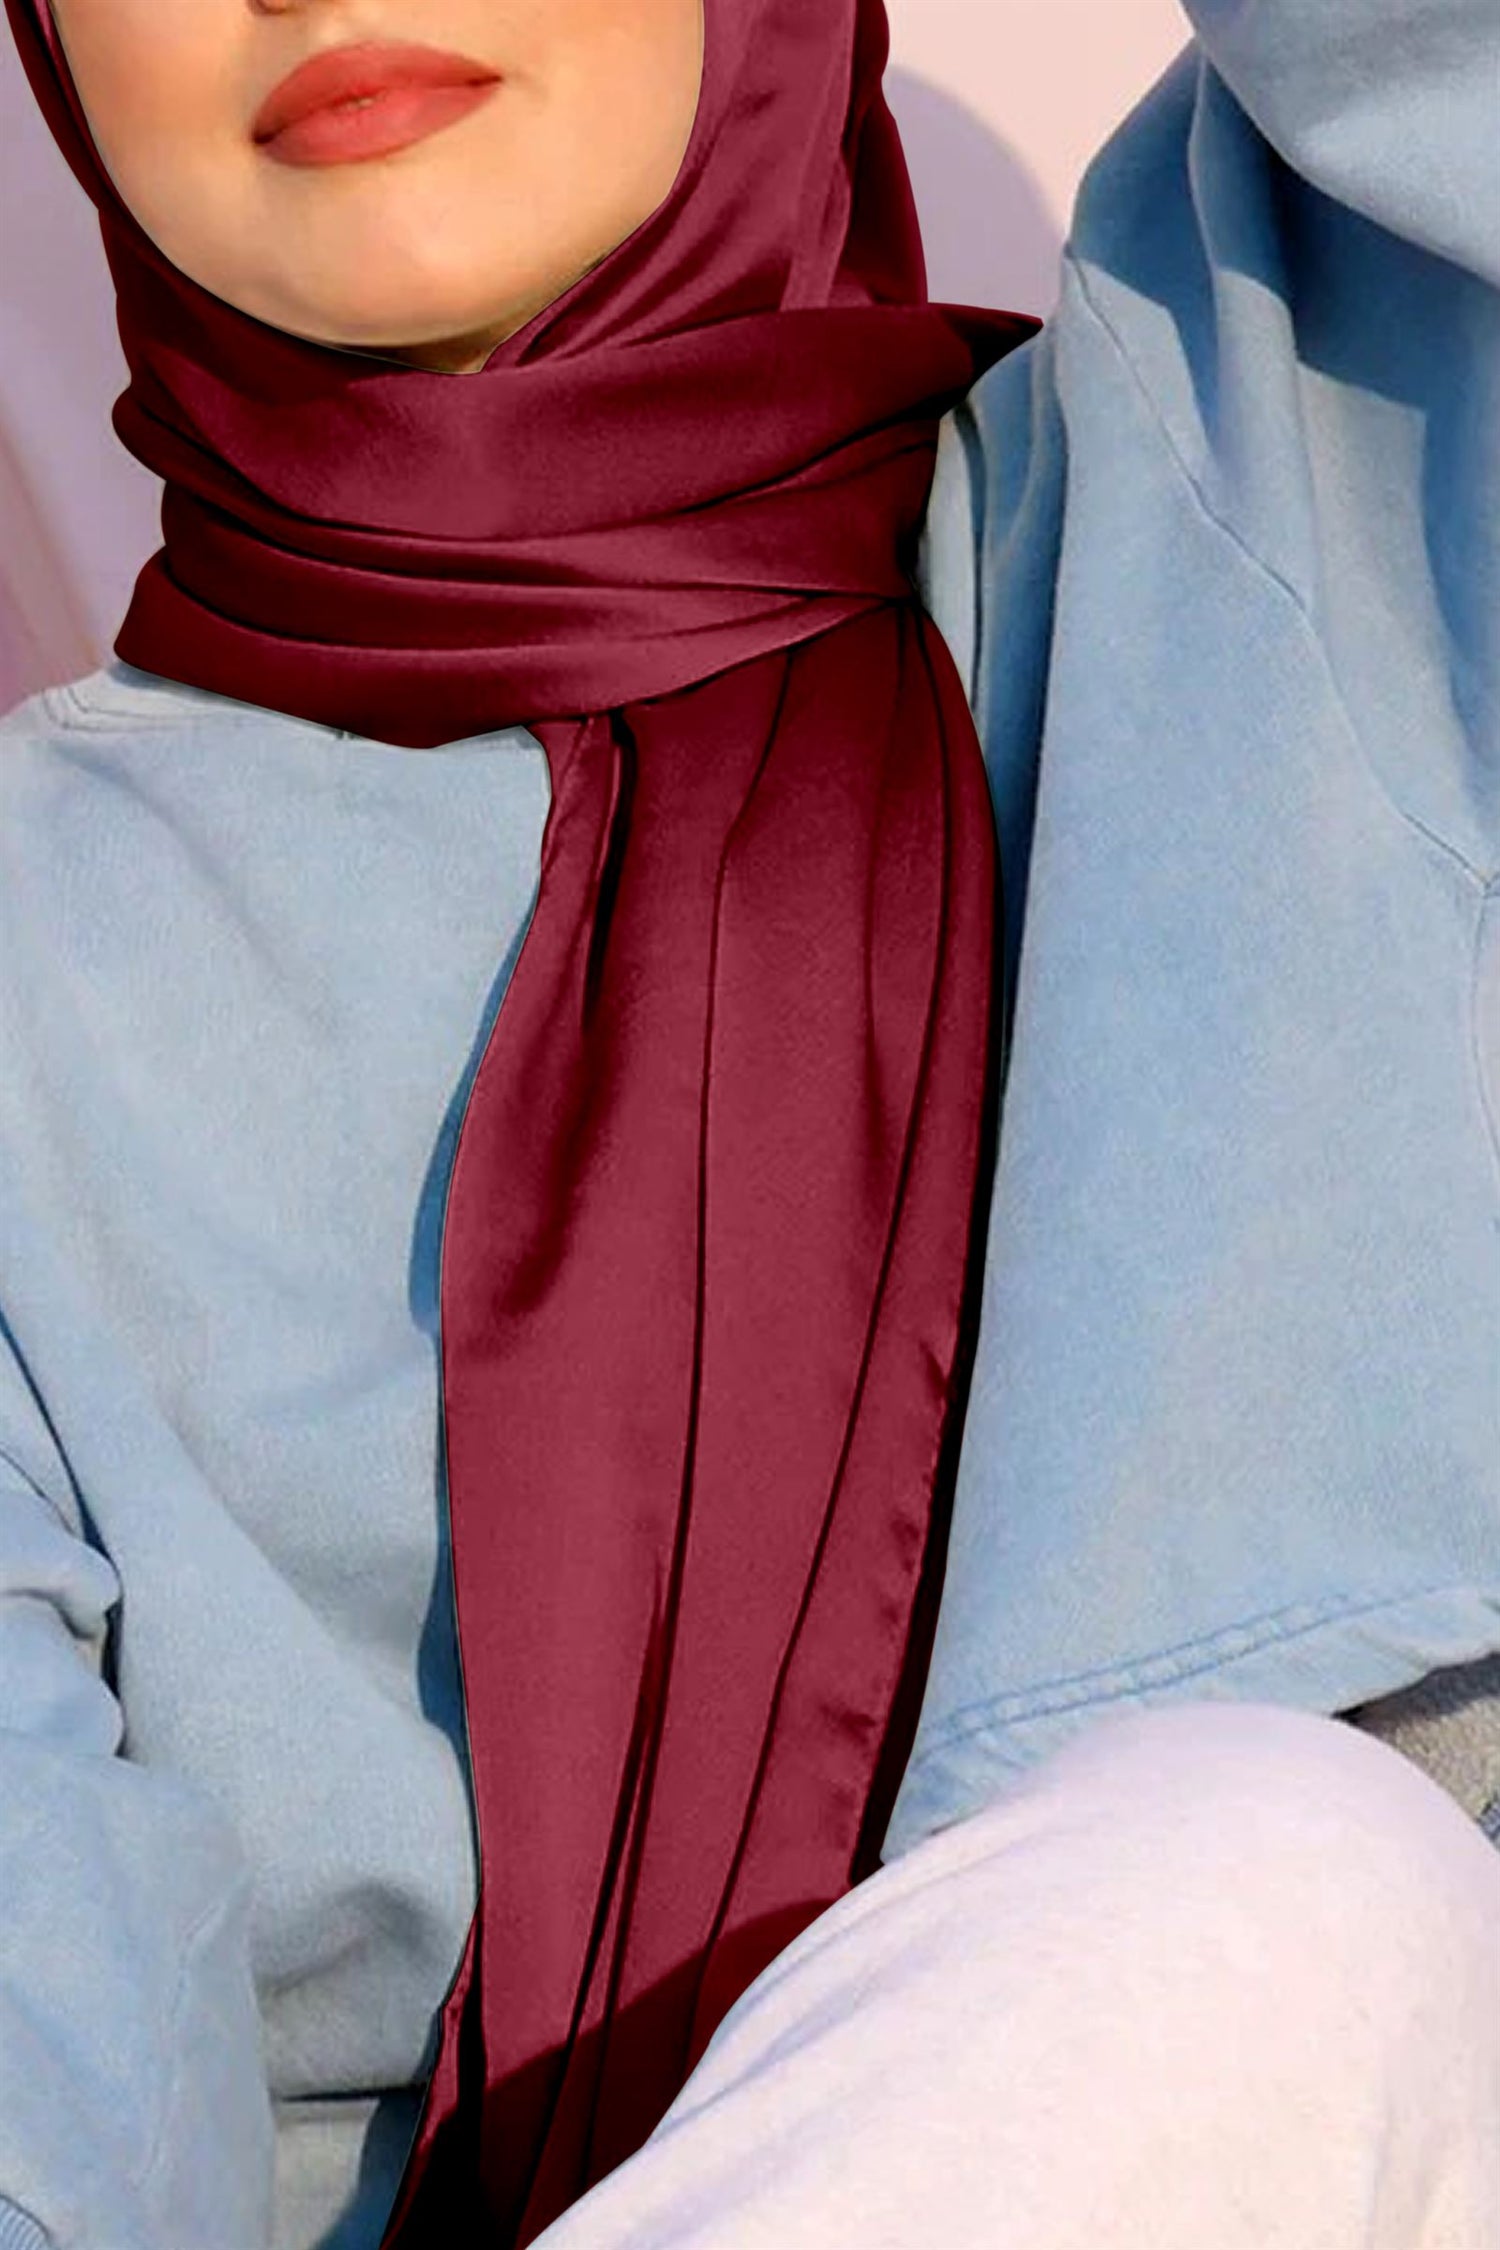 Pure Satin Silk Hijab in Maroon